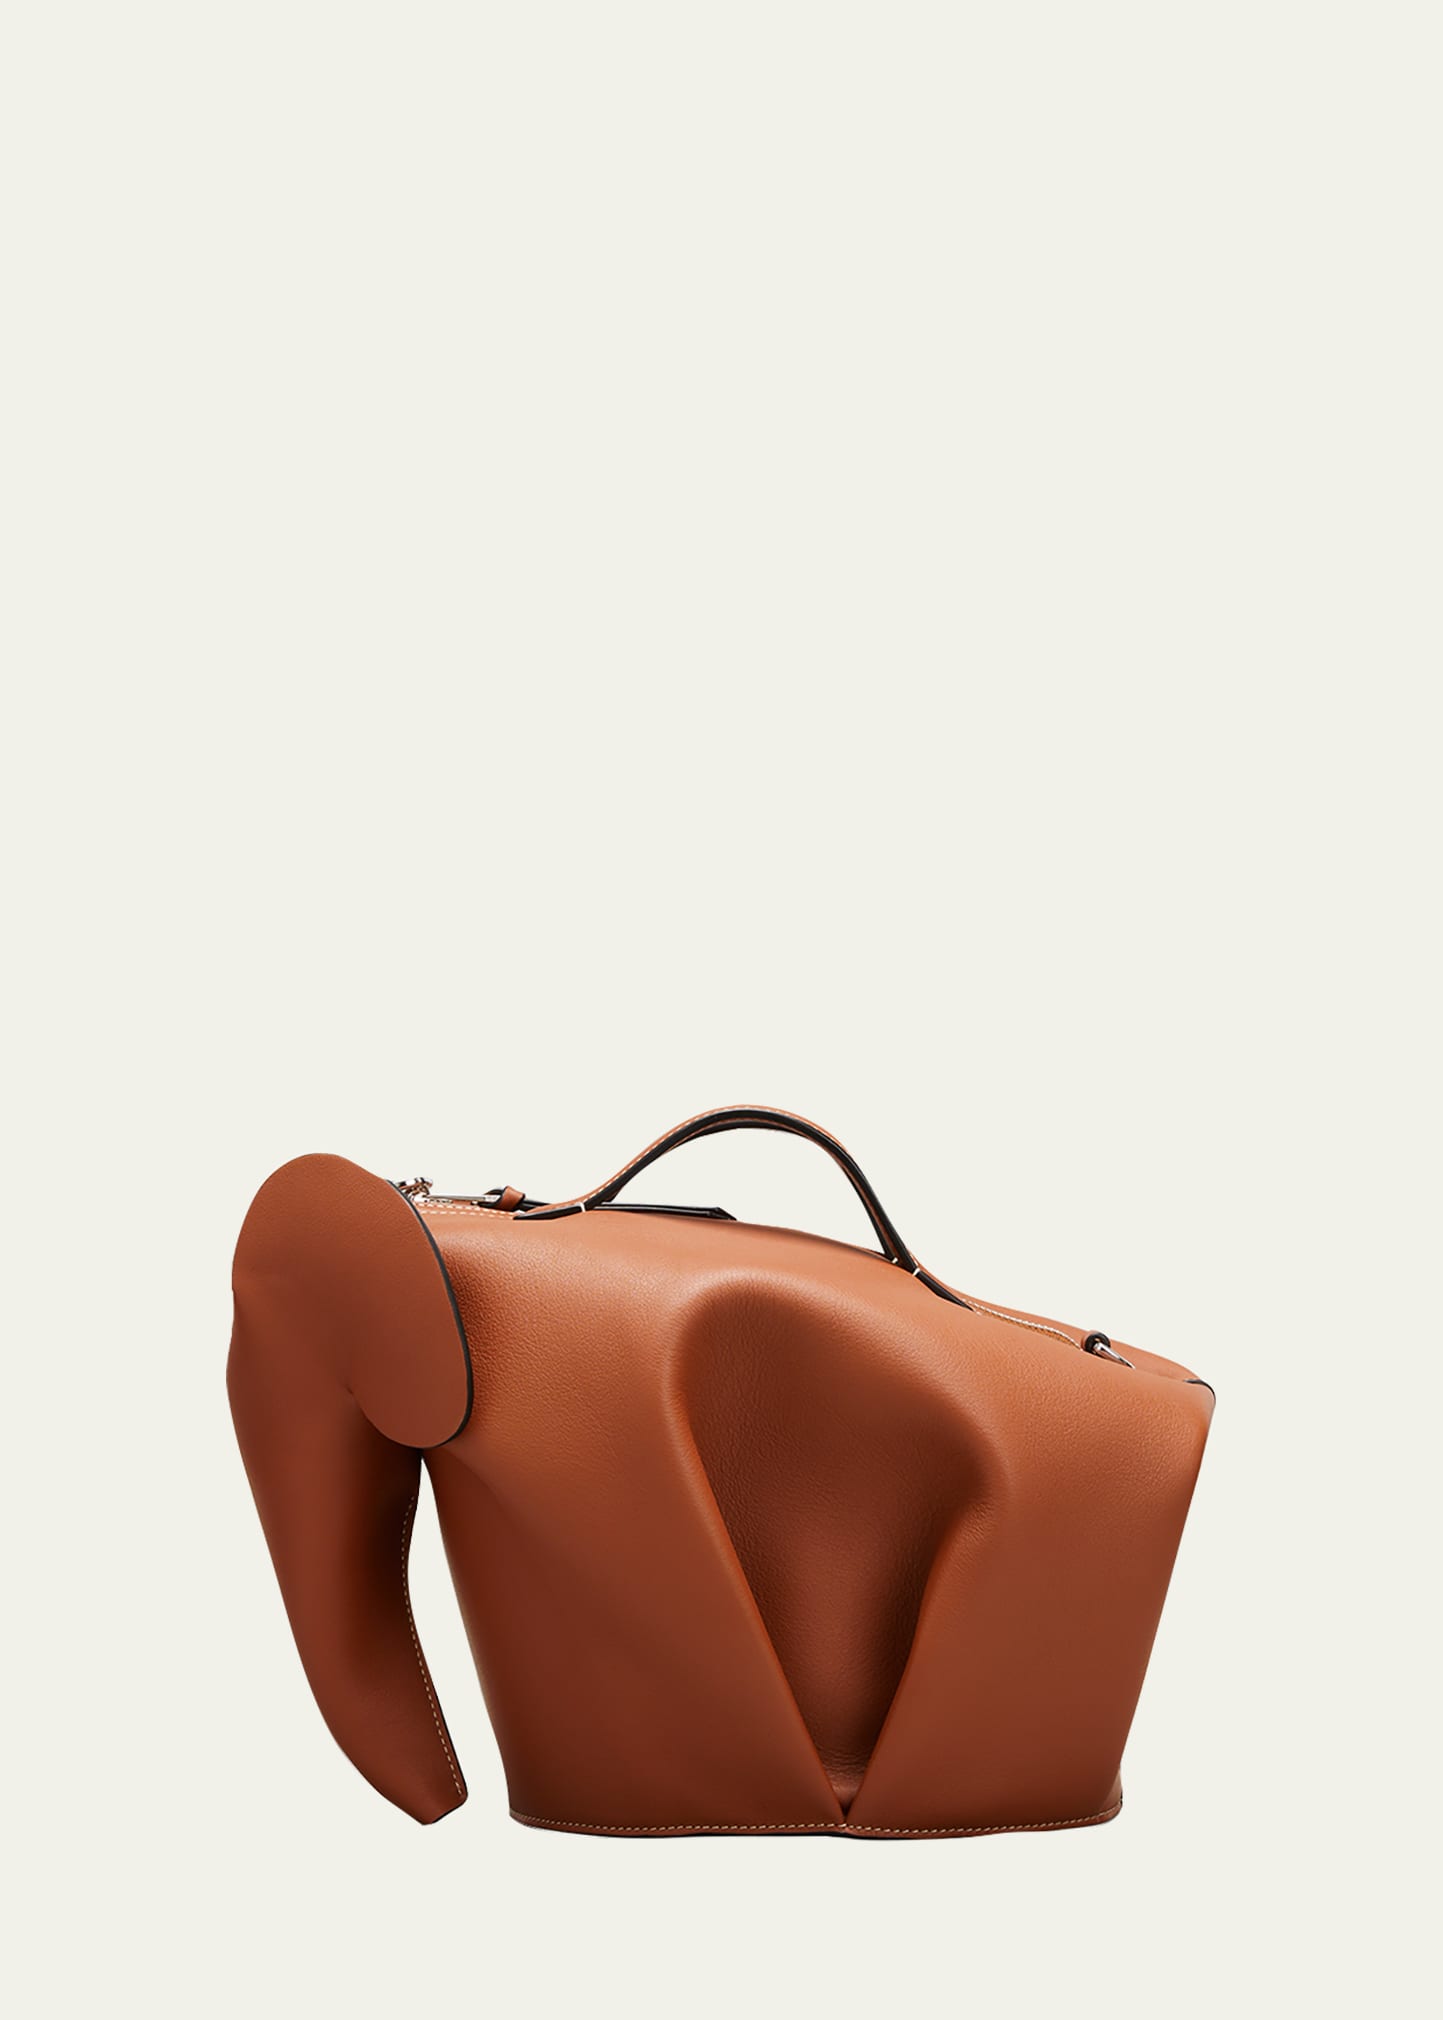 Loewe Elephant Star Bag in Brown